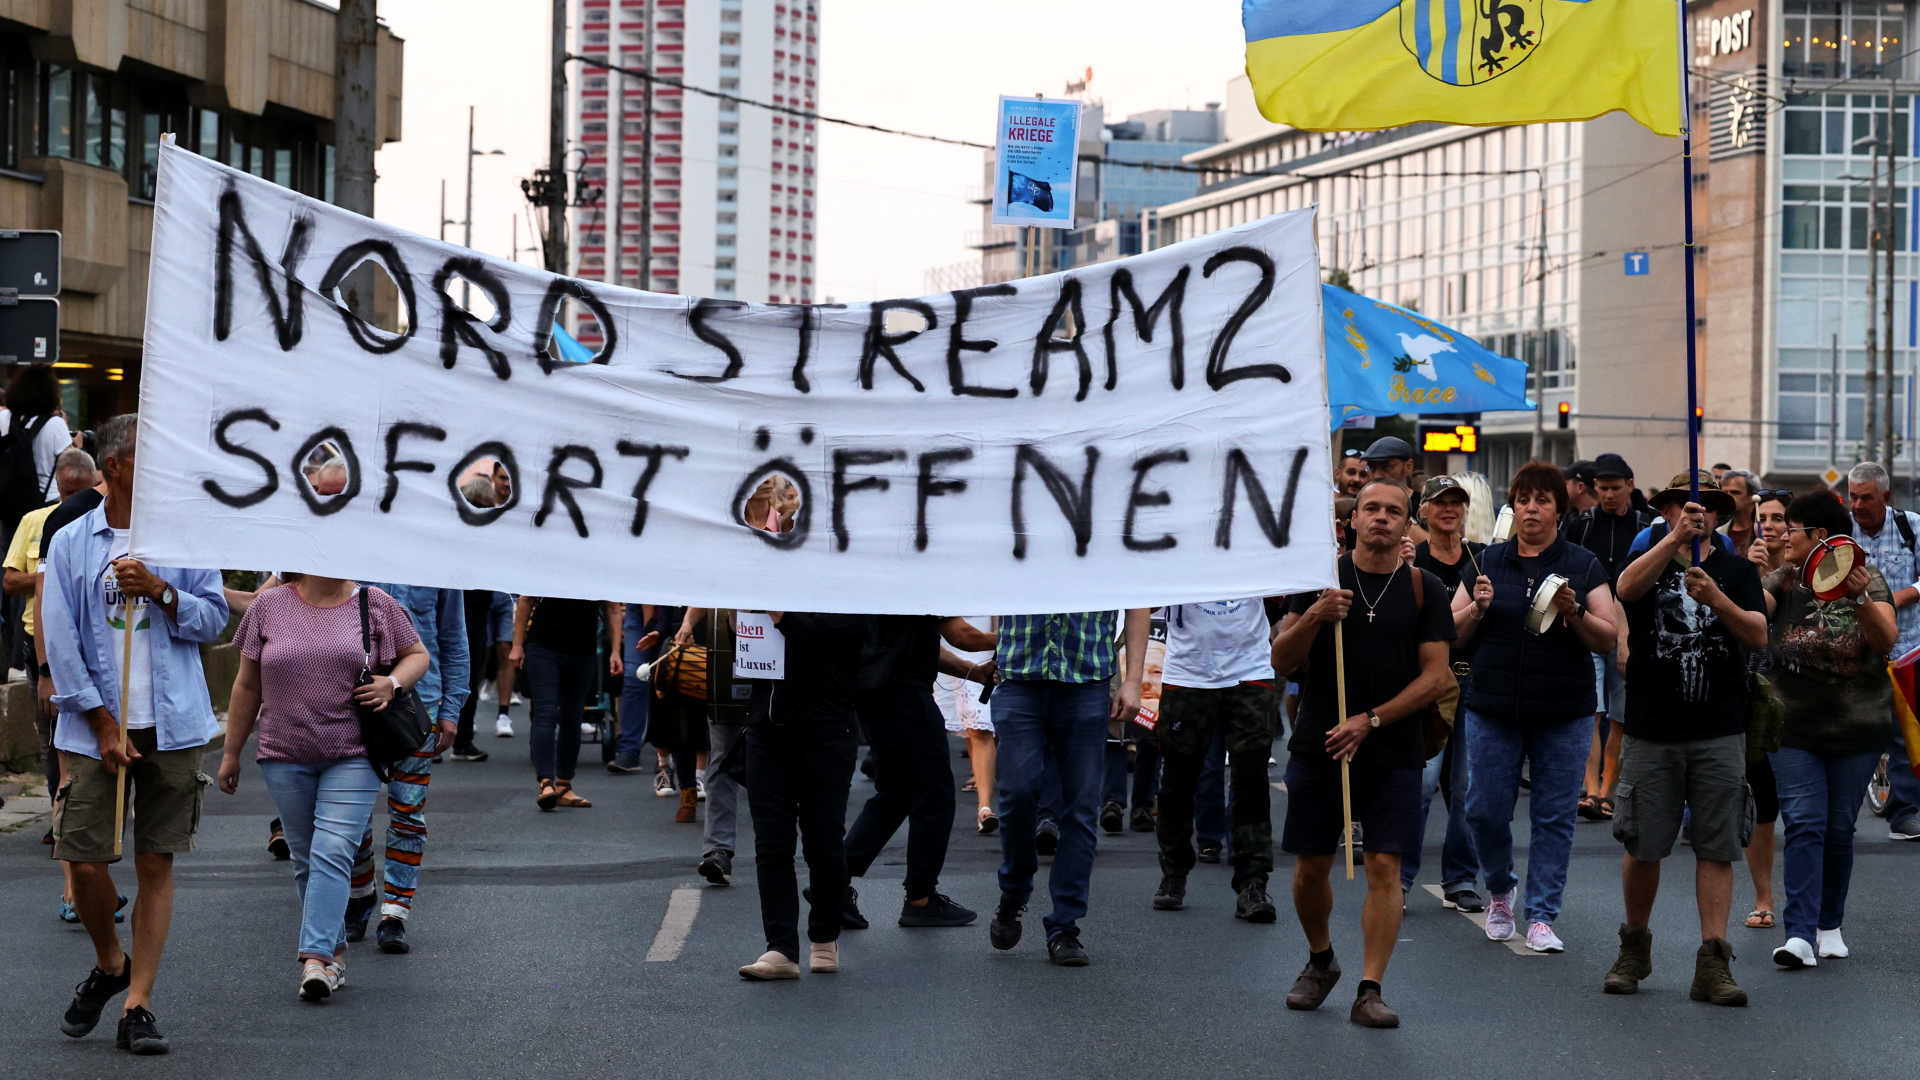 Teilnehmer eine rechten Demo in Leipzig fordern: "Nordstream 2 sofort öffnen" | REUTERS